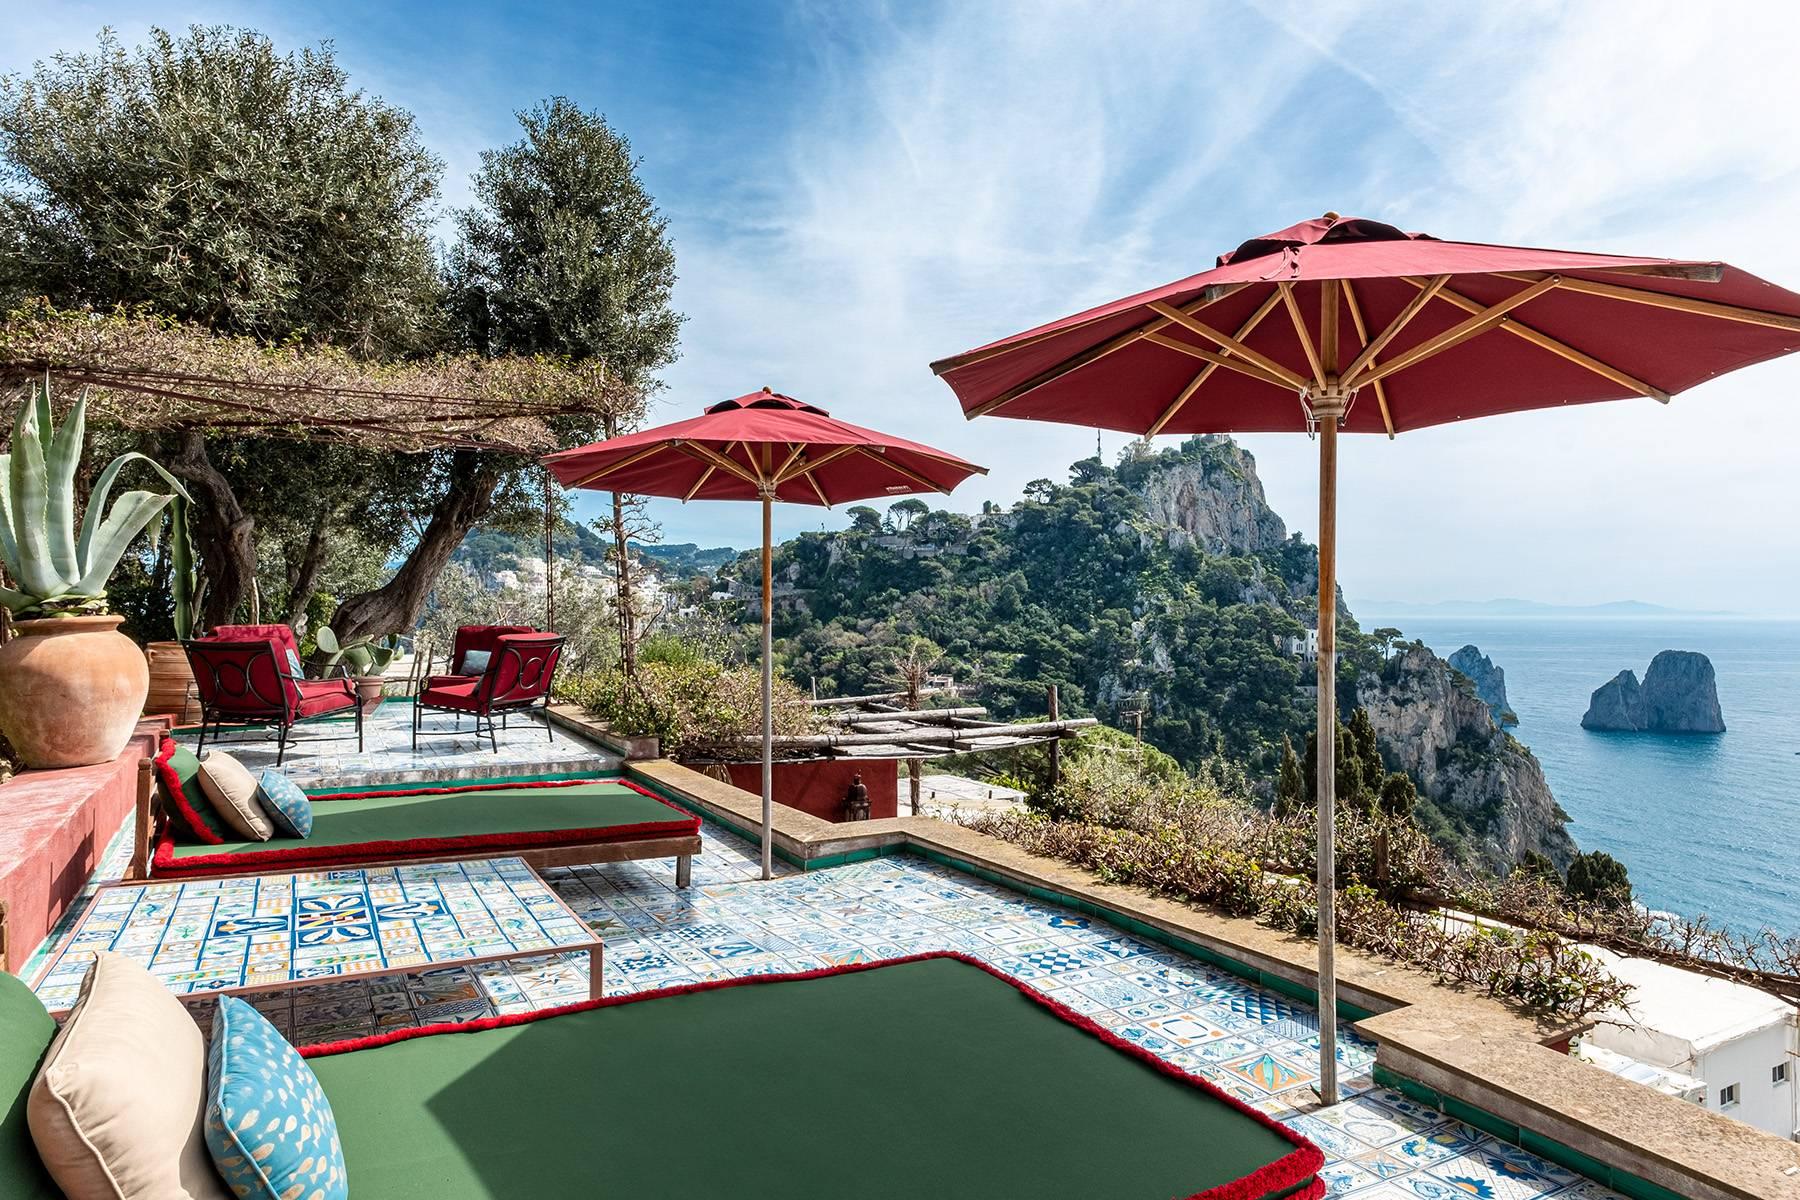 Remarquable villa design avec piscine sculptée surplombant les rochers Faraglioni. - 3